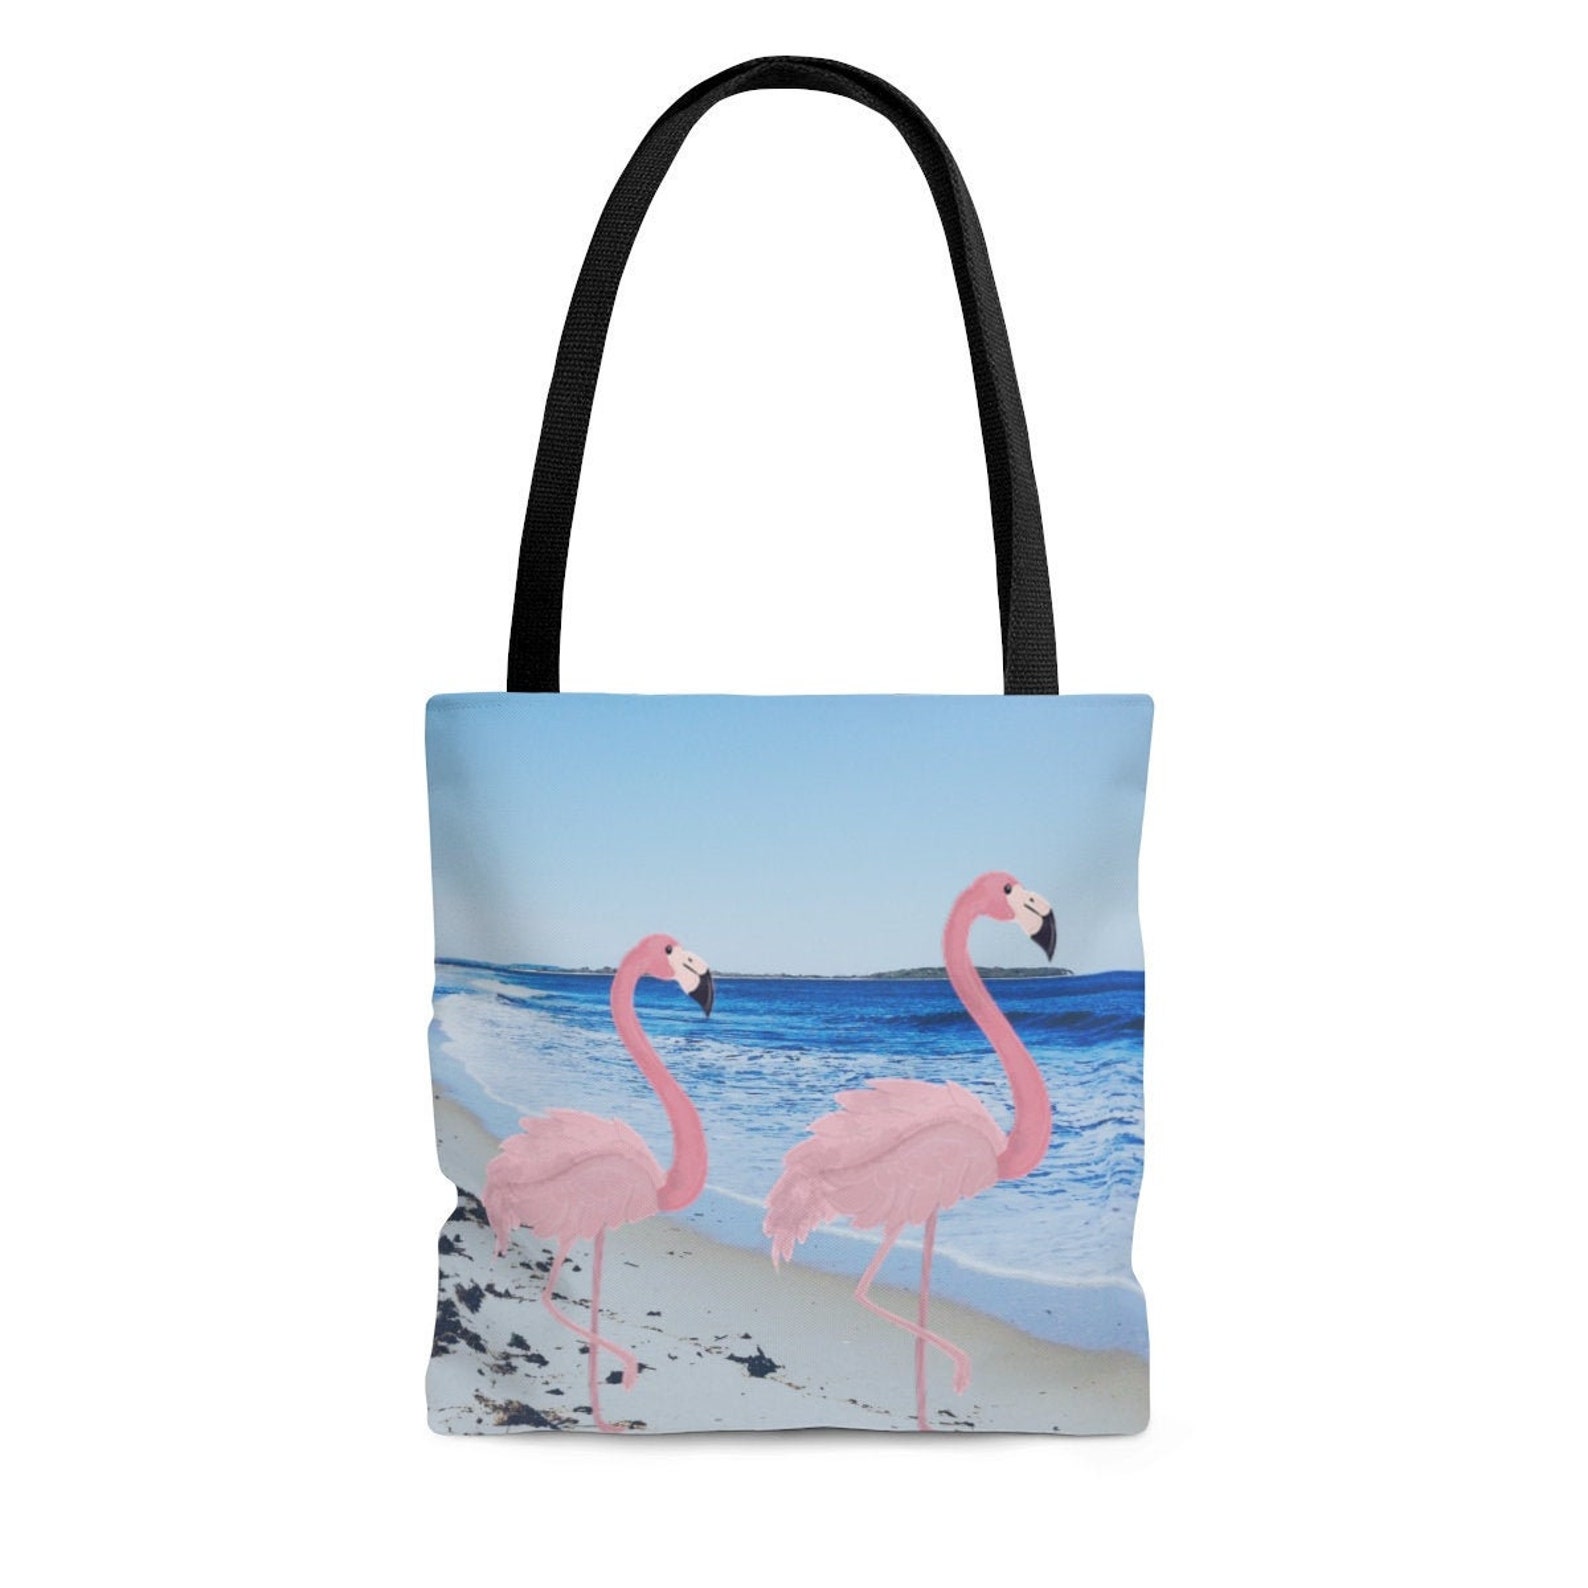 Flamingo Tote Bag Flamingo Bag Flamingo Purse Flamingo | Etsy